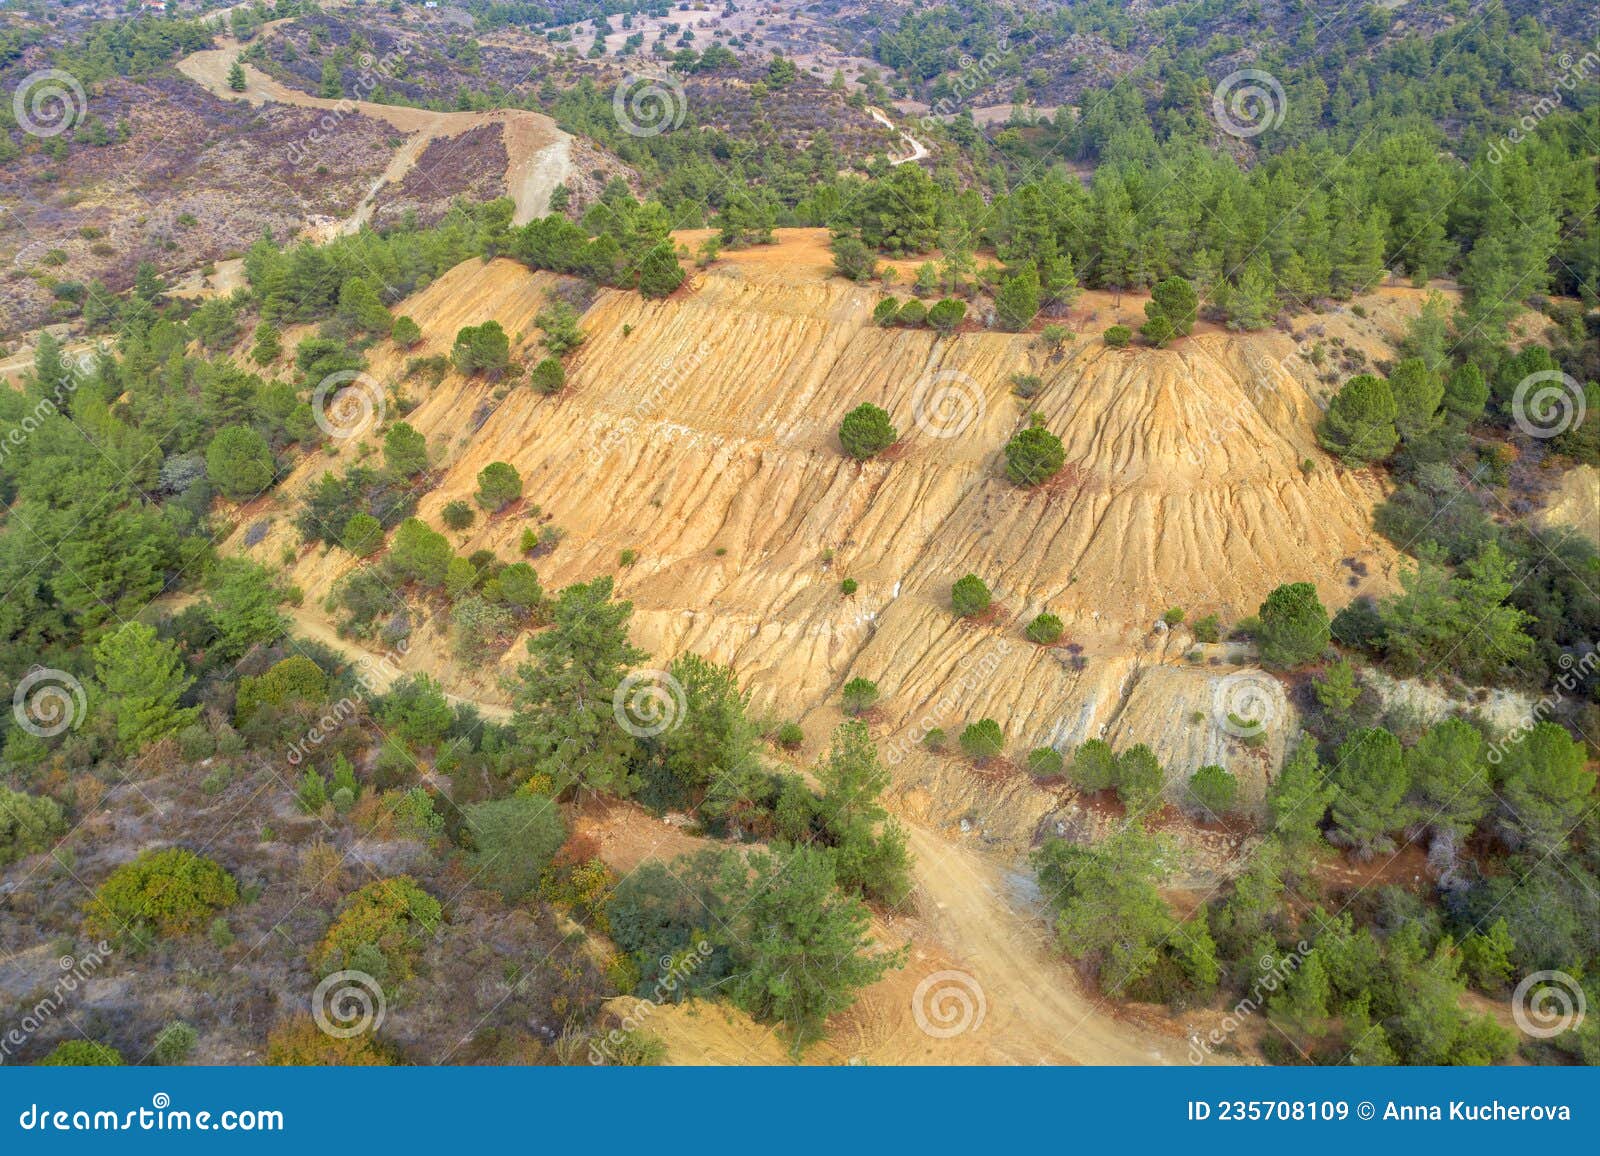 restoration of former open pit evloimeni copper mine, cyprus. forest restored over old waste dumps